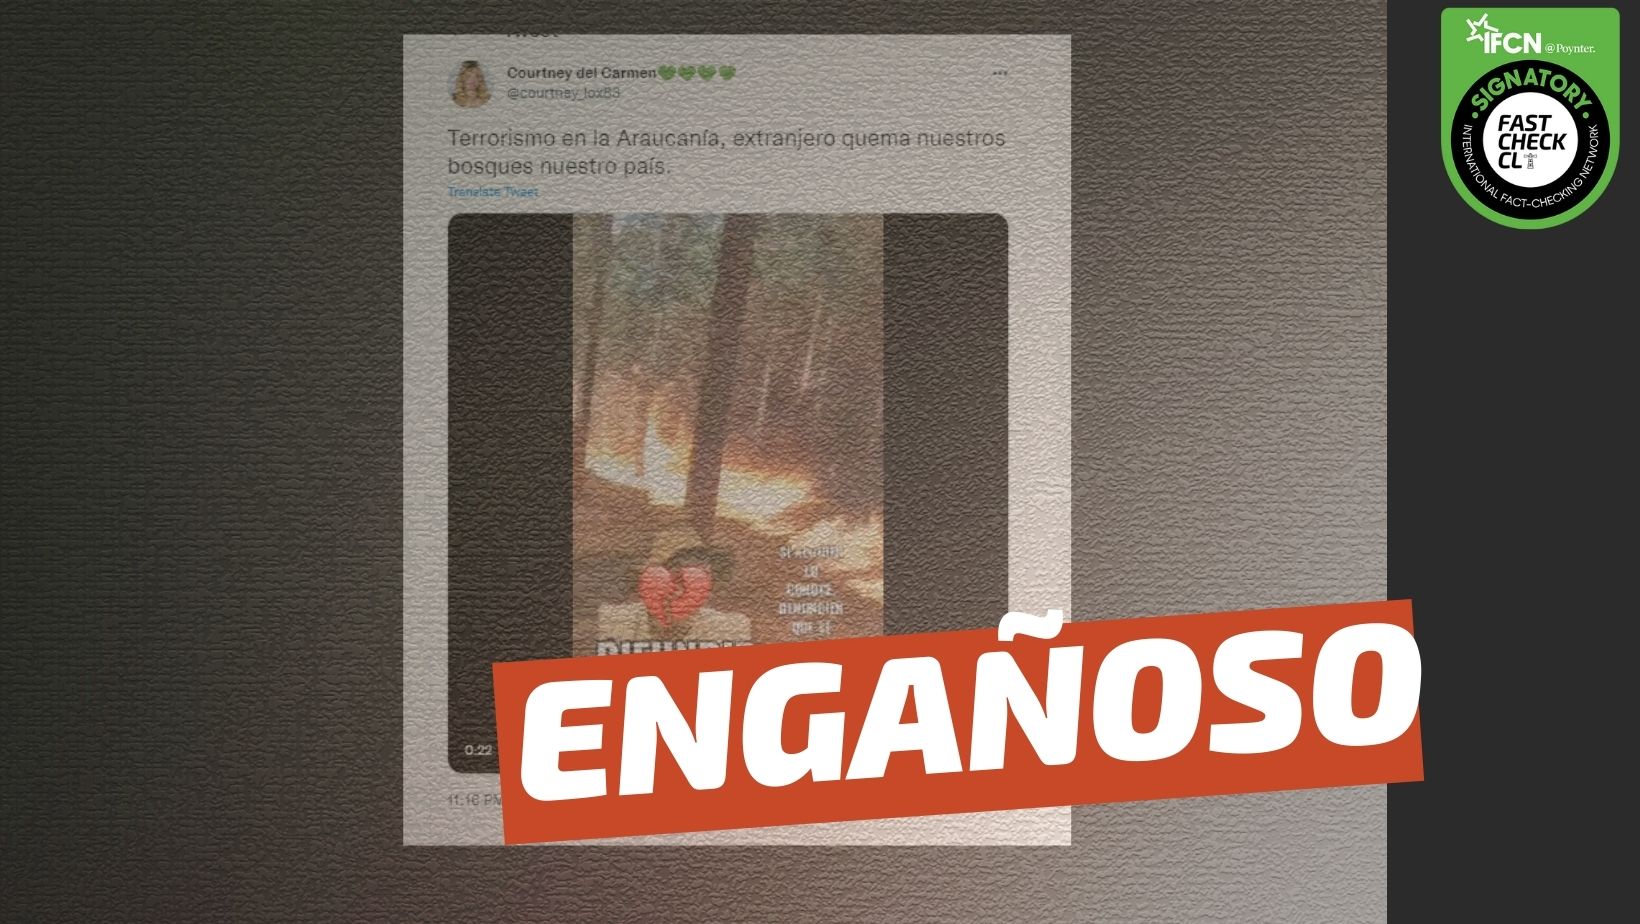 Read more about the article (Video) “Terrorismo en la Araucanía, extranjero quema nuestros bosques en nuestro país”: #Engañoso